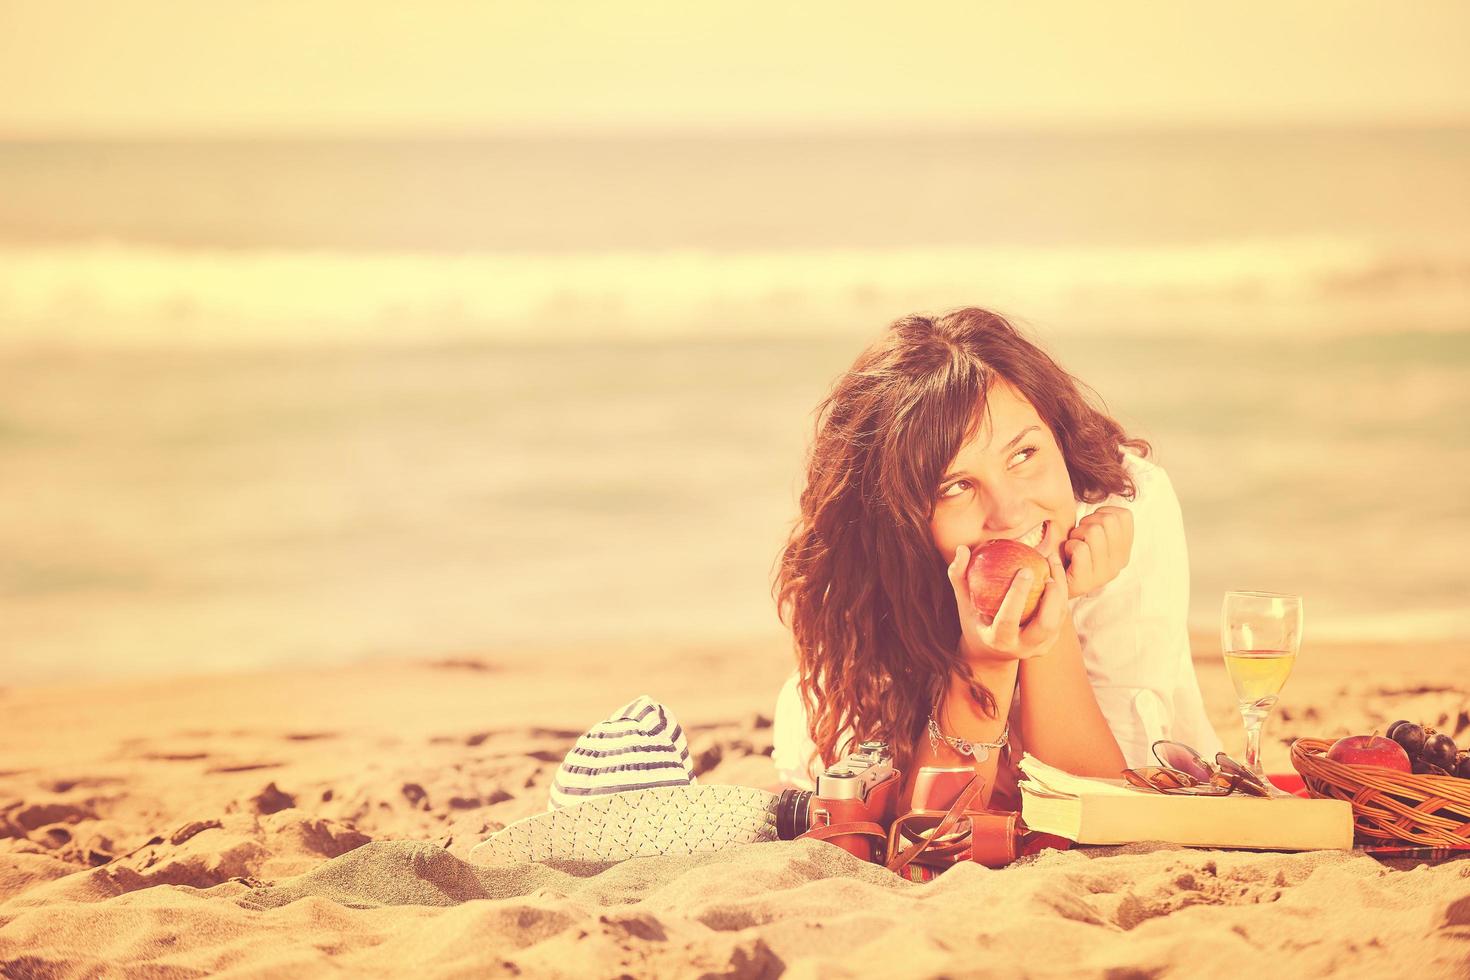 mujer joven feliz en la playa foto